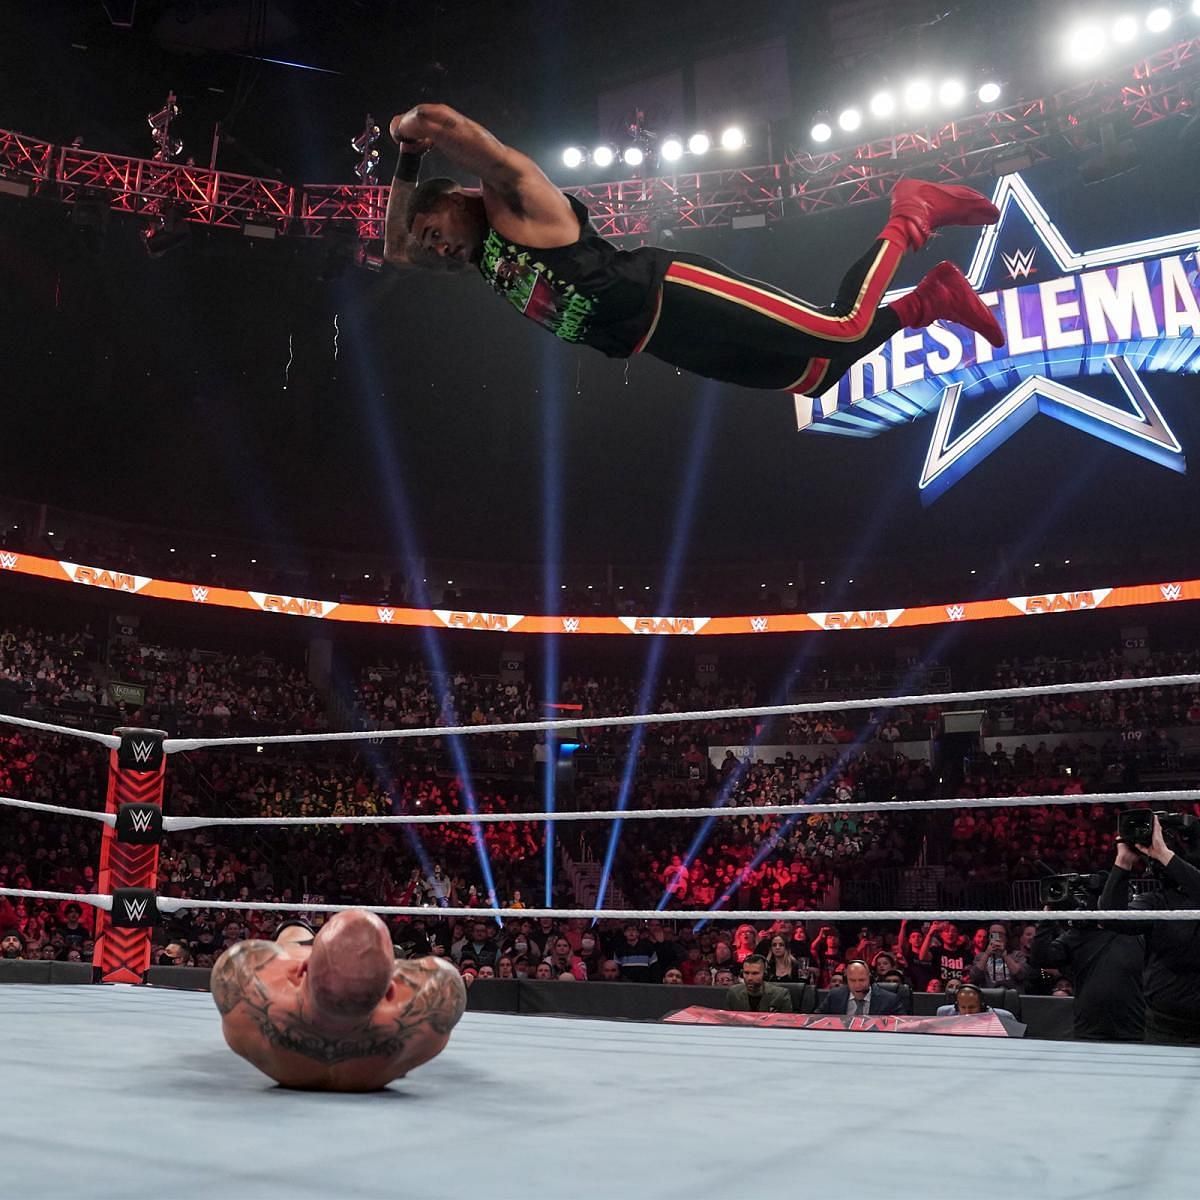 WWE Raw में रैंडी ऑर्टन के ऊपर फ्रॉग स्पलैश मूव लगाते हुए स्ट्रीट प्रॉफिट्स के मोंटेज फोर्ड 